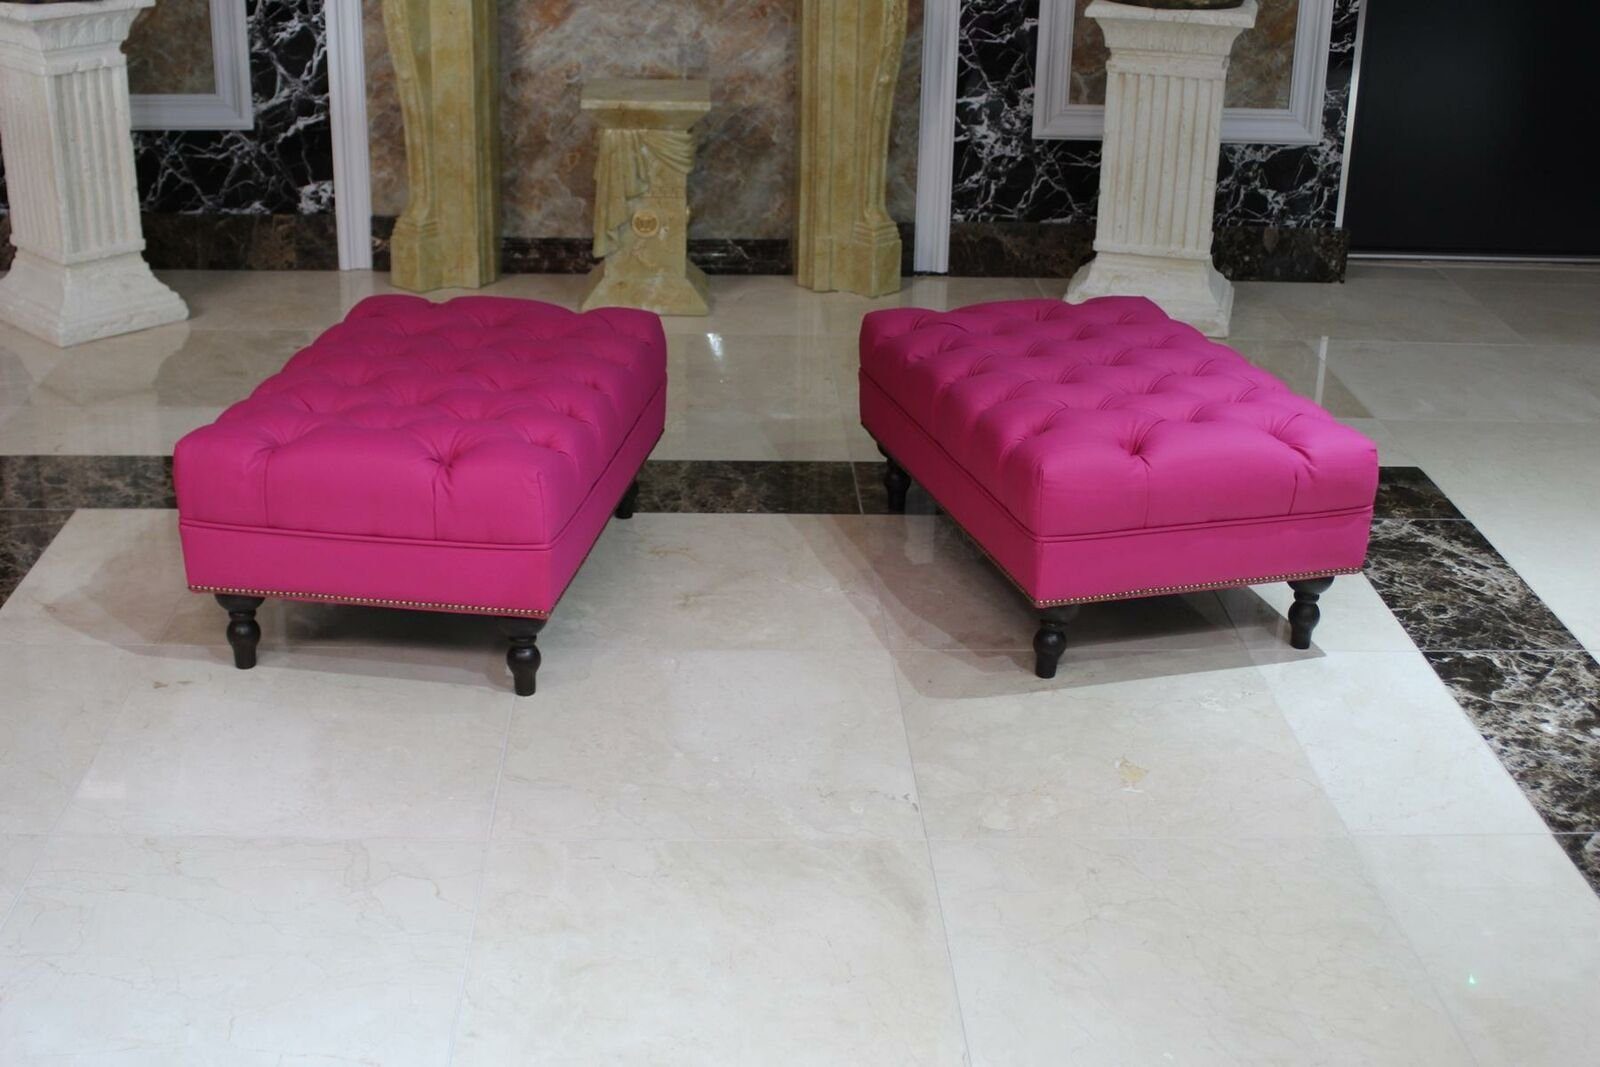 JVmoebel Hocker Stool Pouffe Footstool Luxury Elegant Textile New Modern Rosa Soft Design Sofort